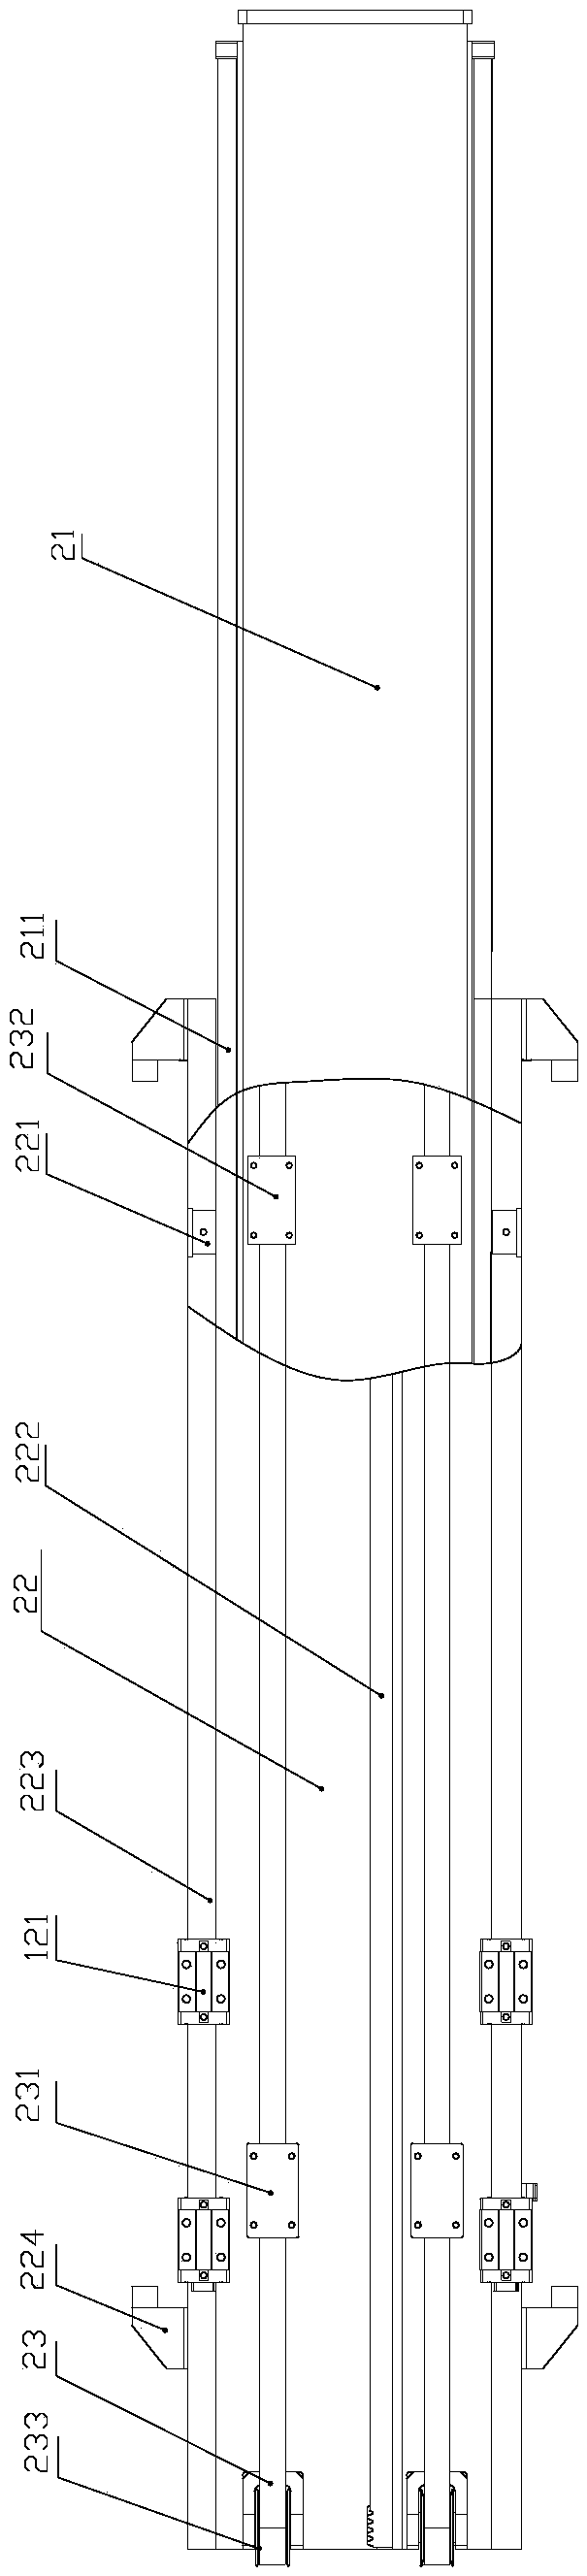 Material transferring mechanism